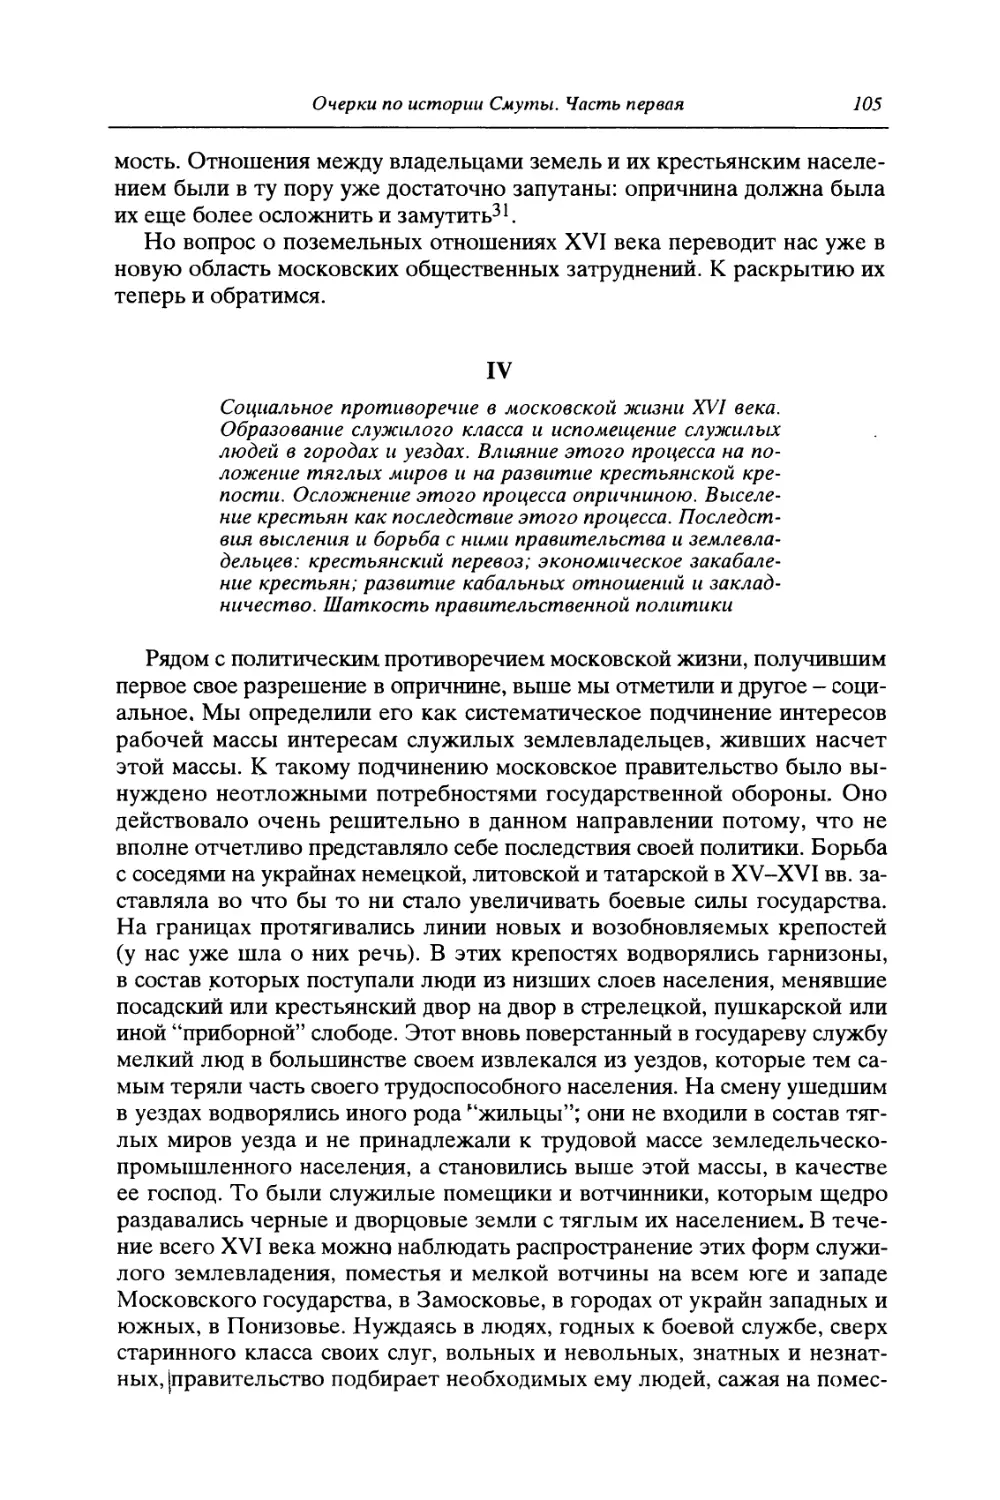 IV. Социальное противоречие в московской жизни XVI века